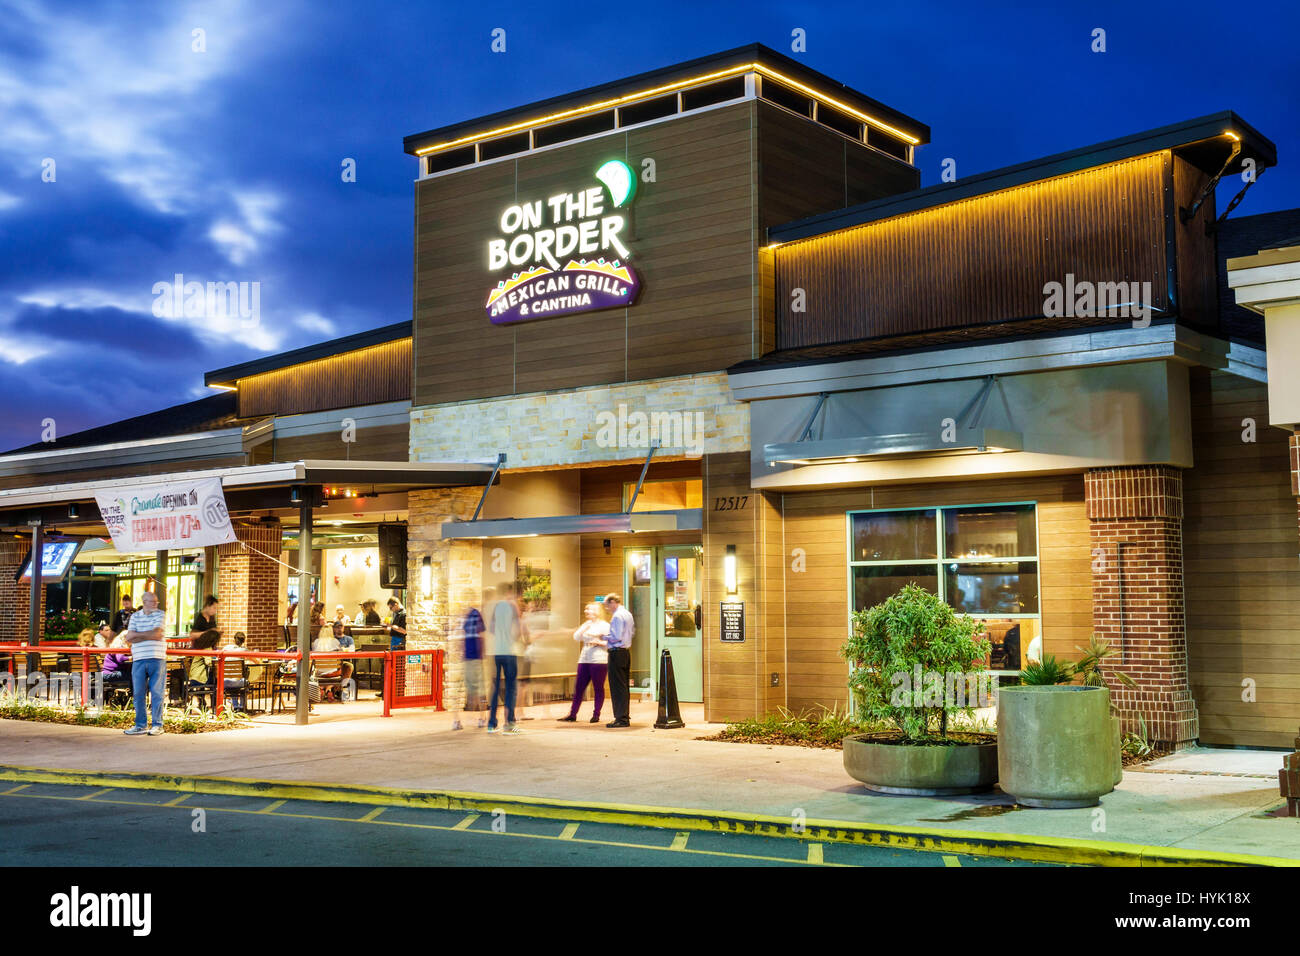 Orlando Florida, Crossroads of Lake Buena Vista, ristoranti, shopping plaza, esterno, al confine, messicano grill, cantina, ristorante ristoranti cibo ristoranti c Foto Stock